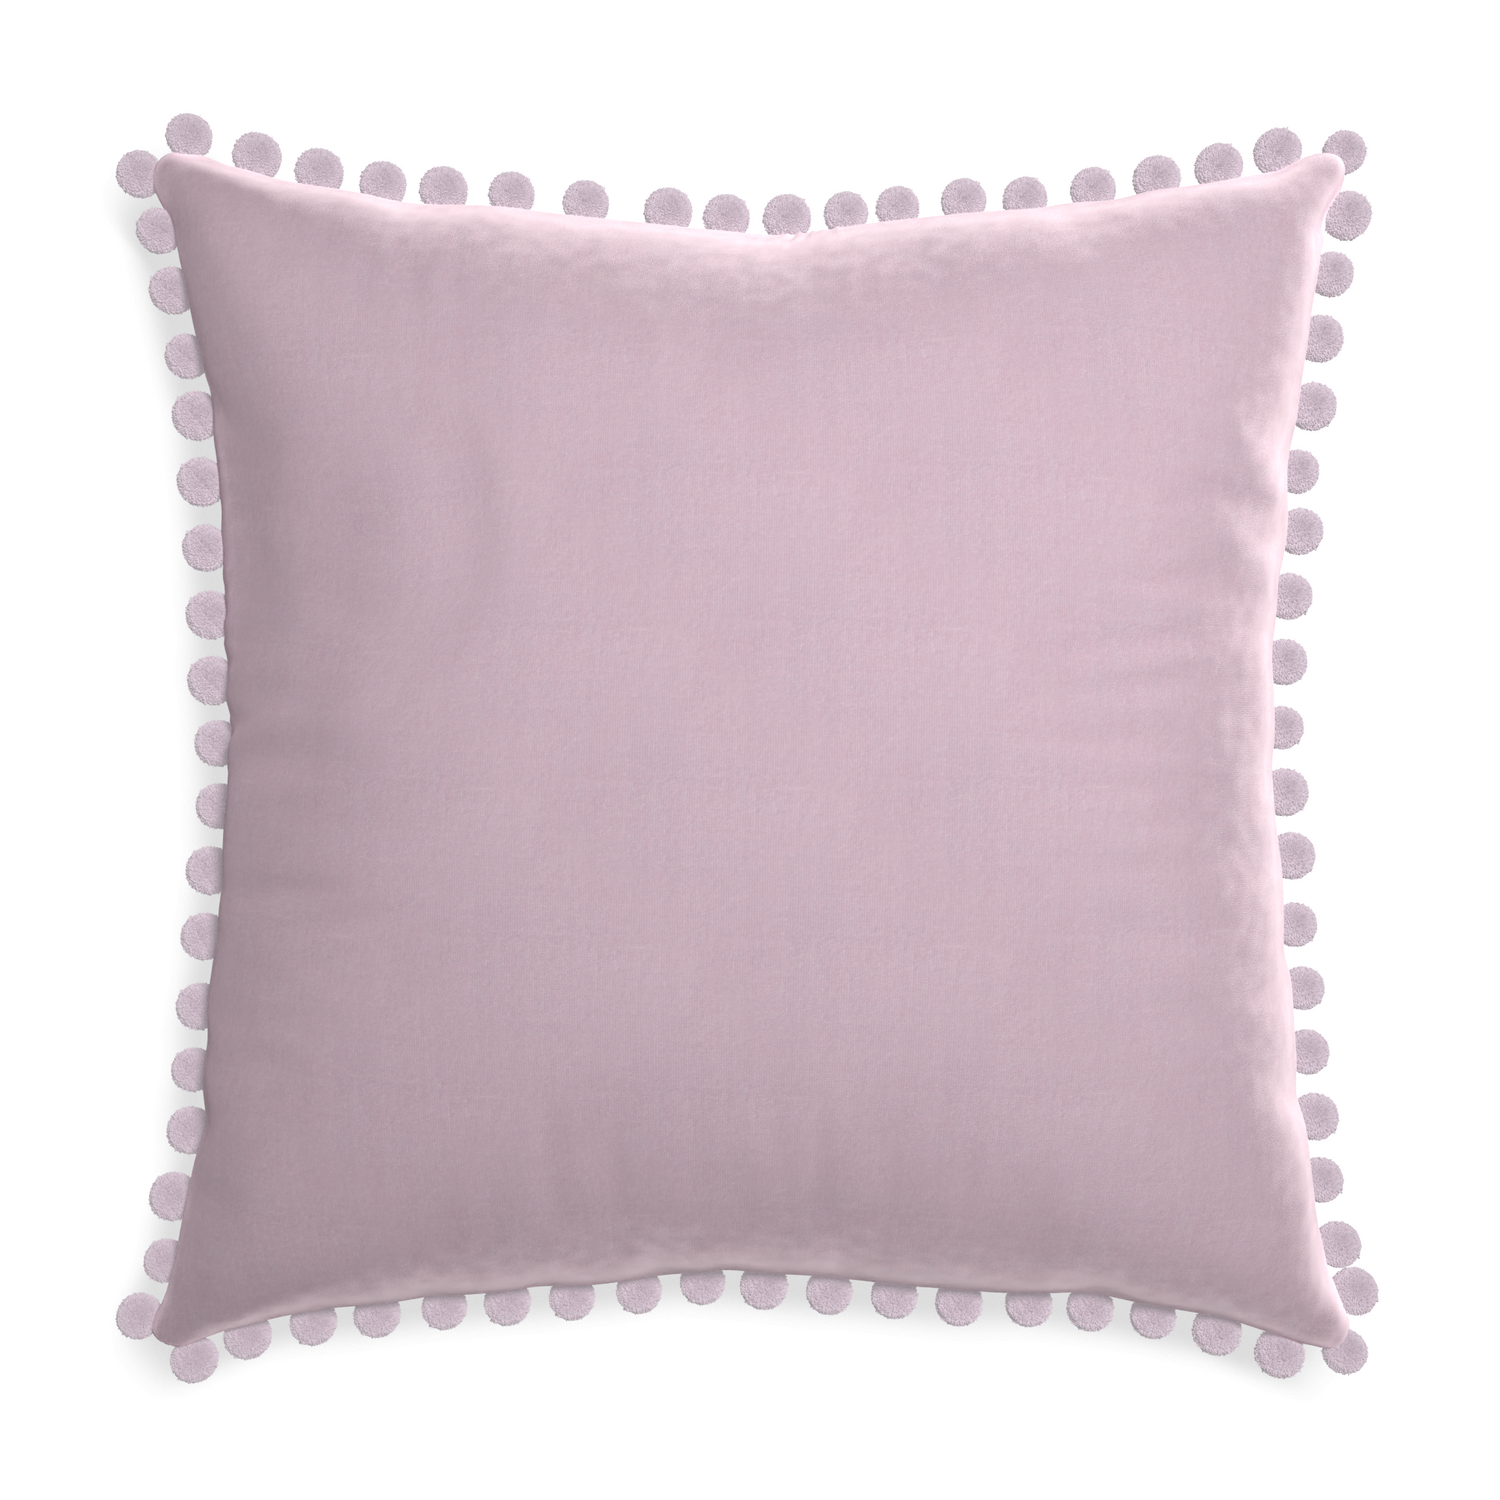 Euro-sham lilac velvet custom pillow with l on white background